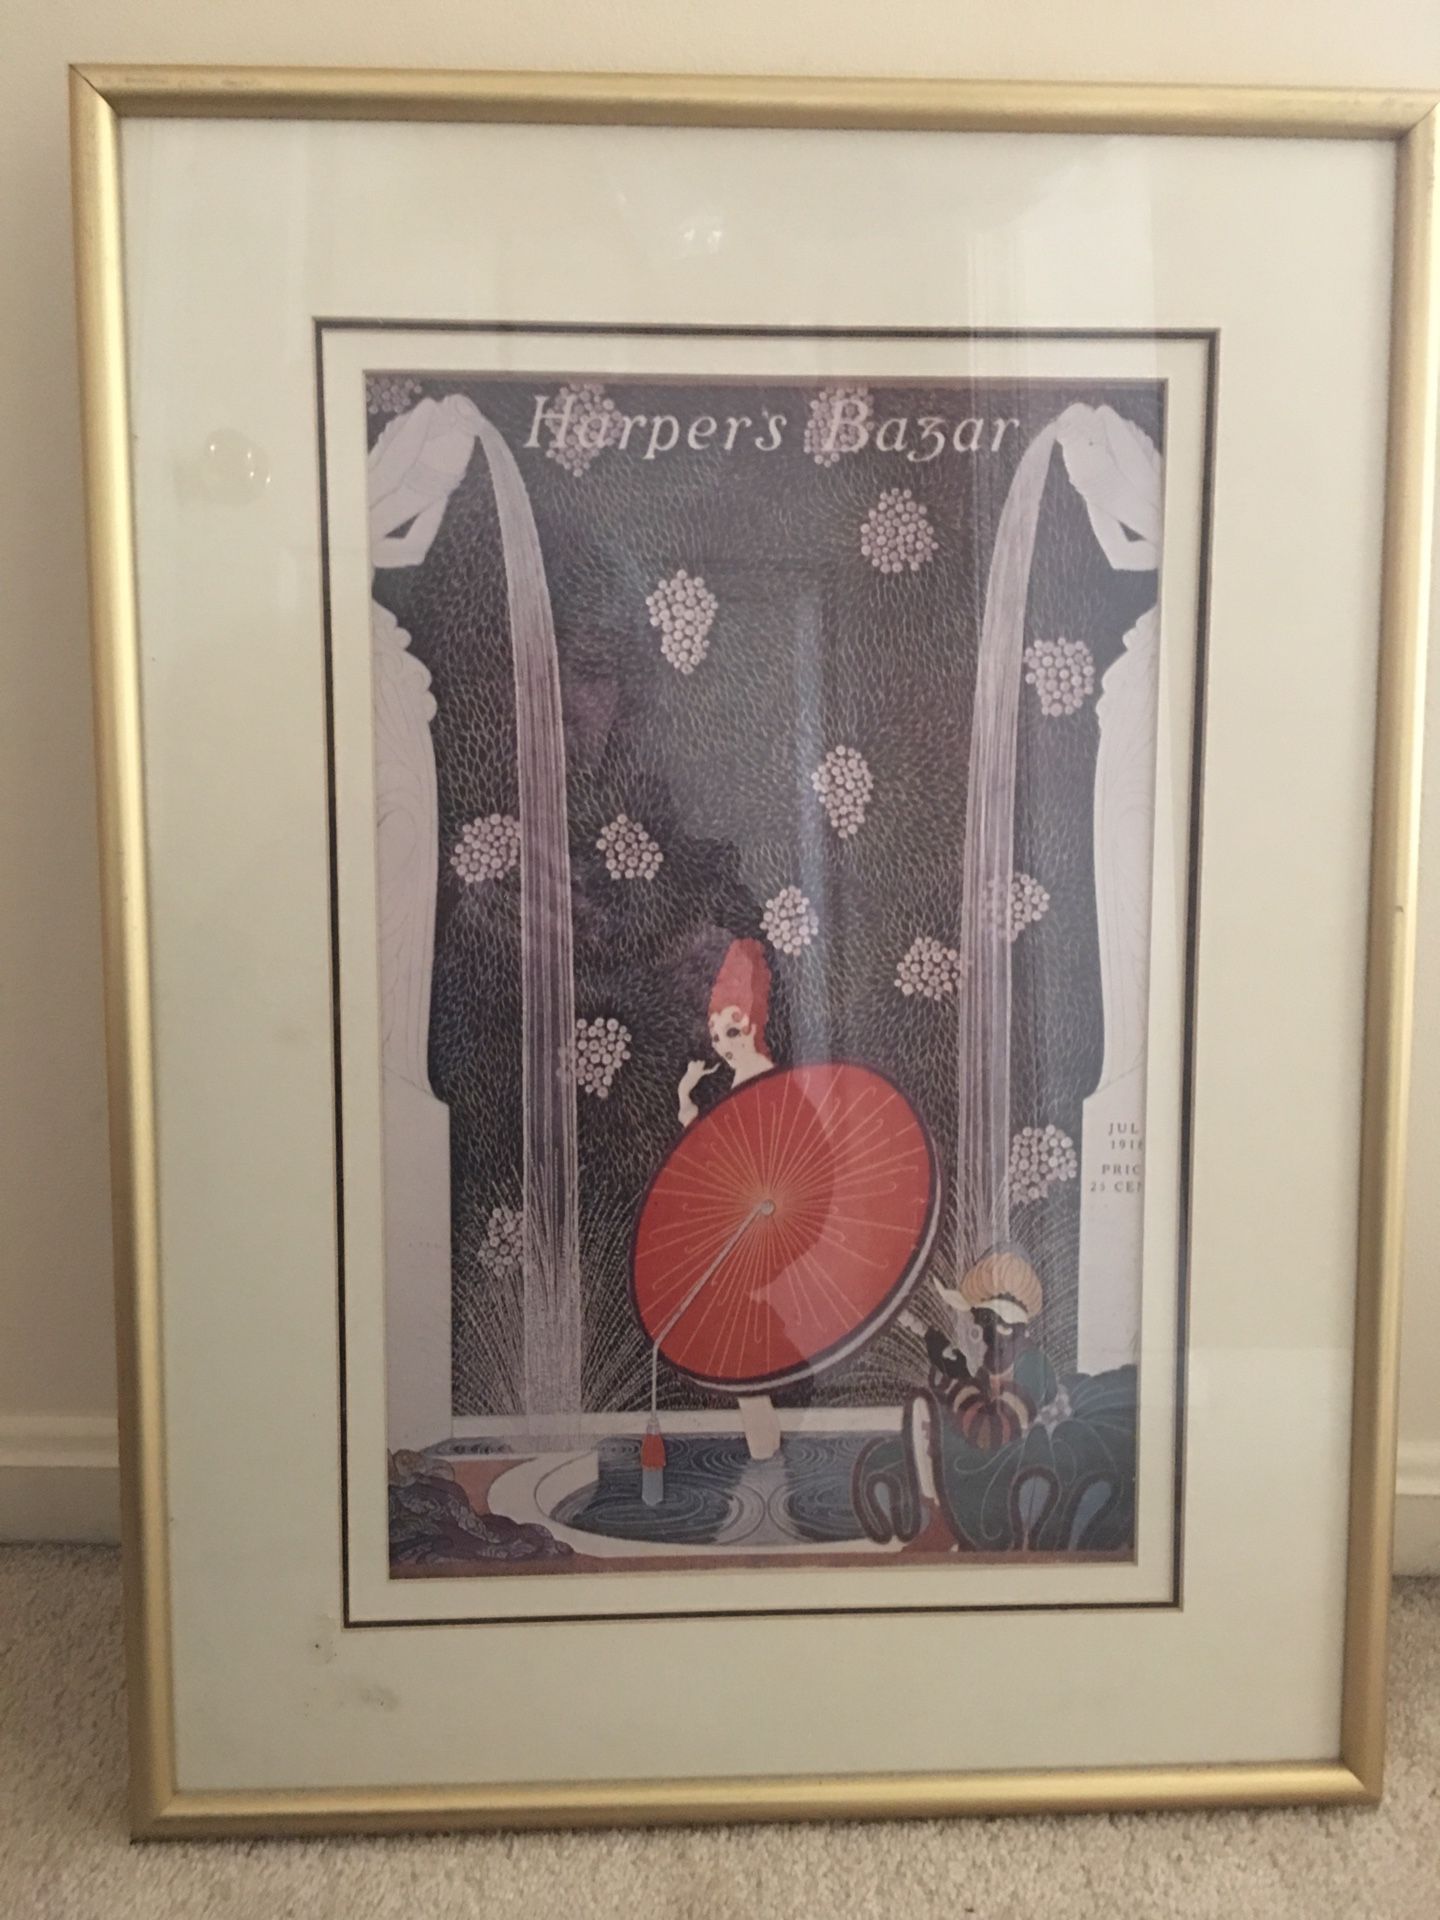 Original harpers bazaar print